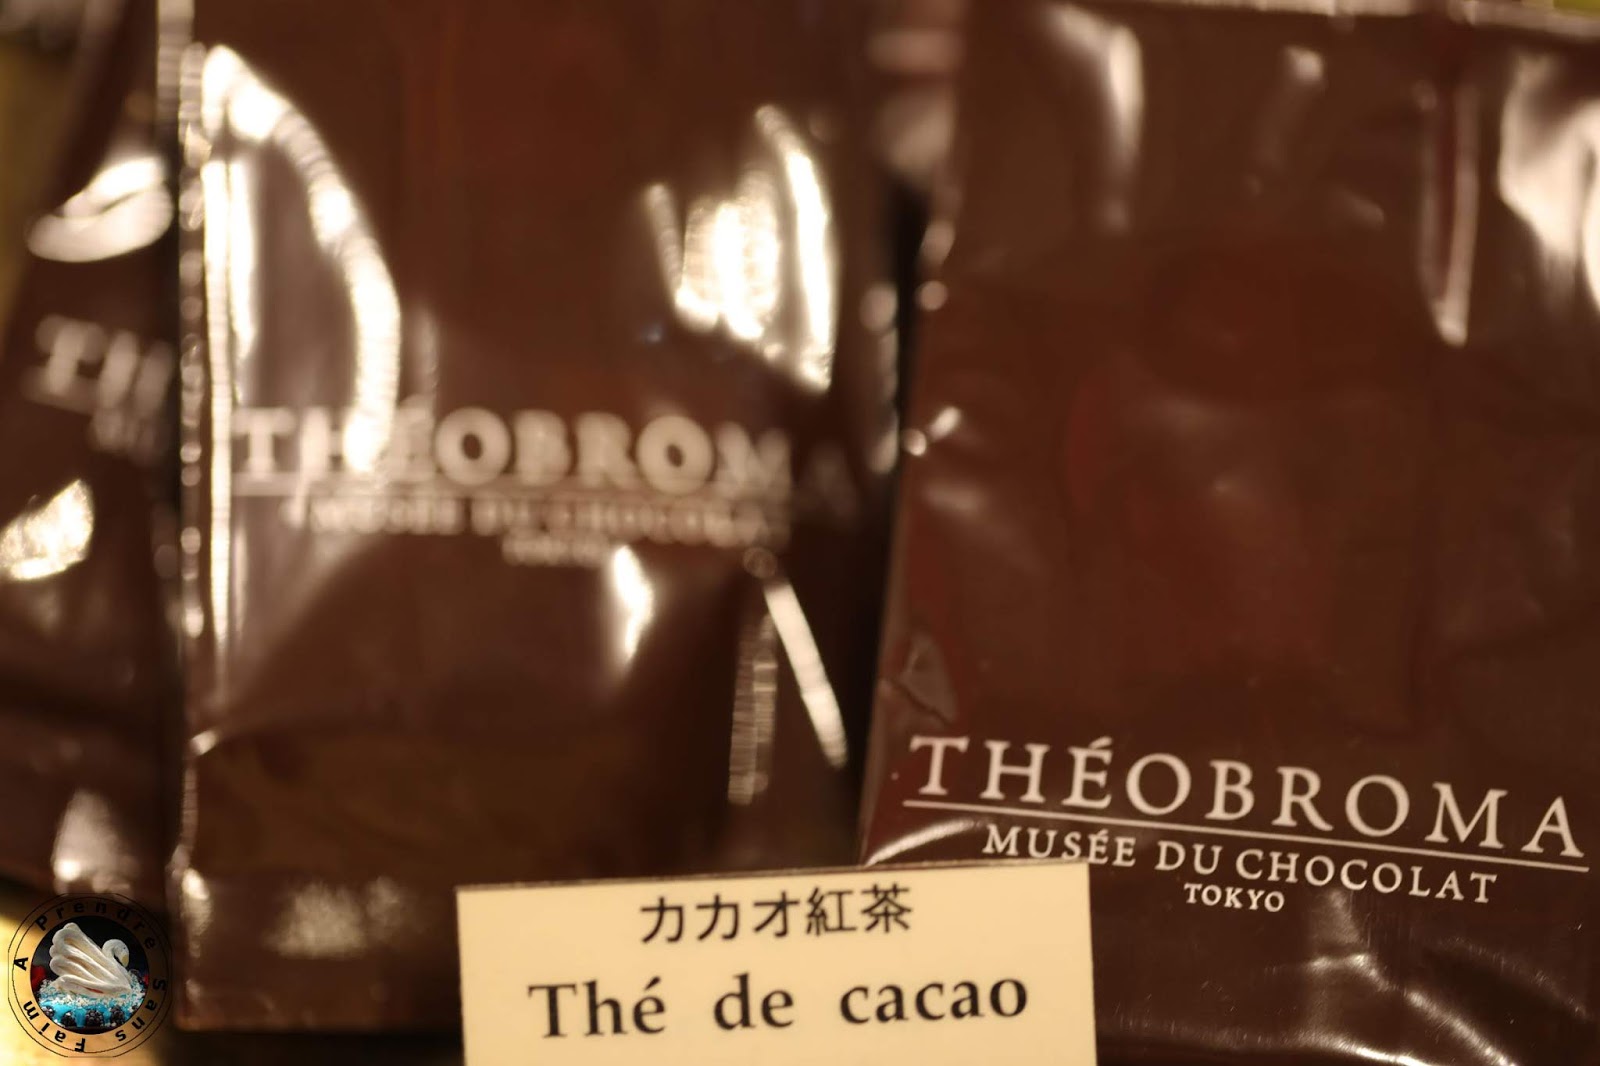 Le Japon au Salon du Chocolat 2018